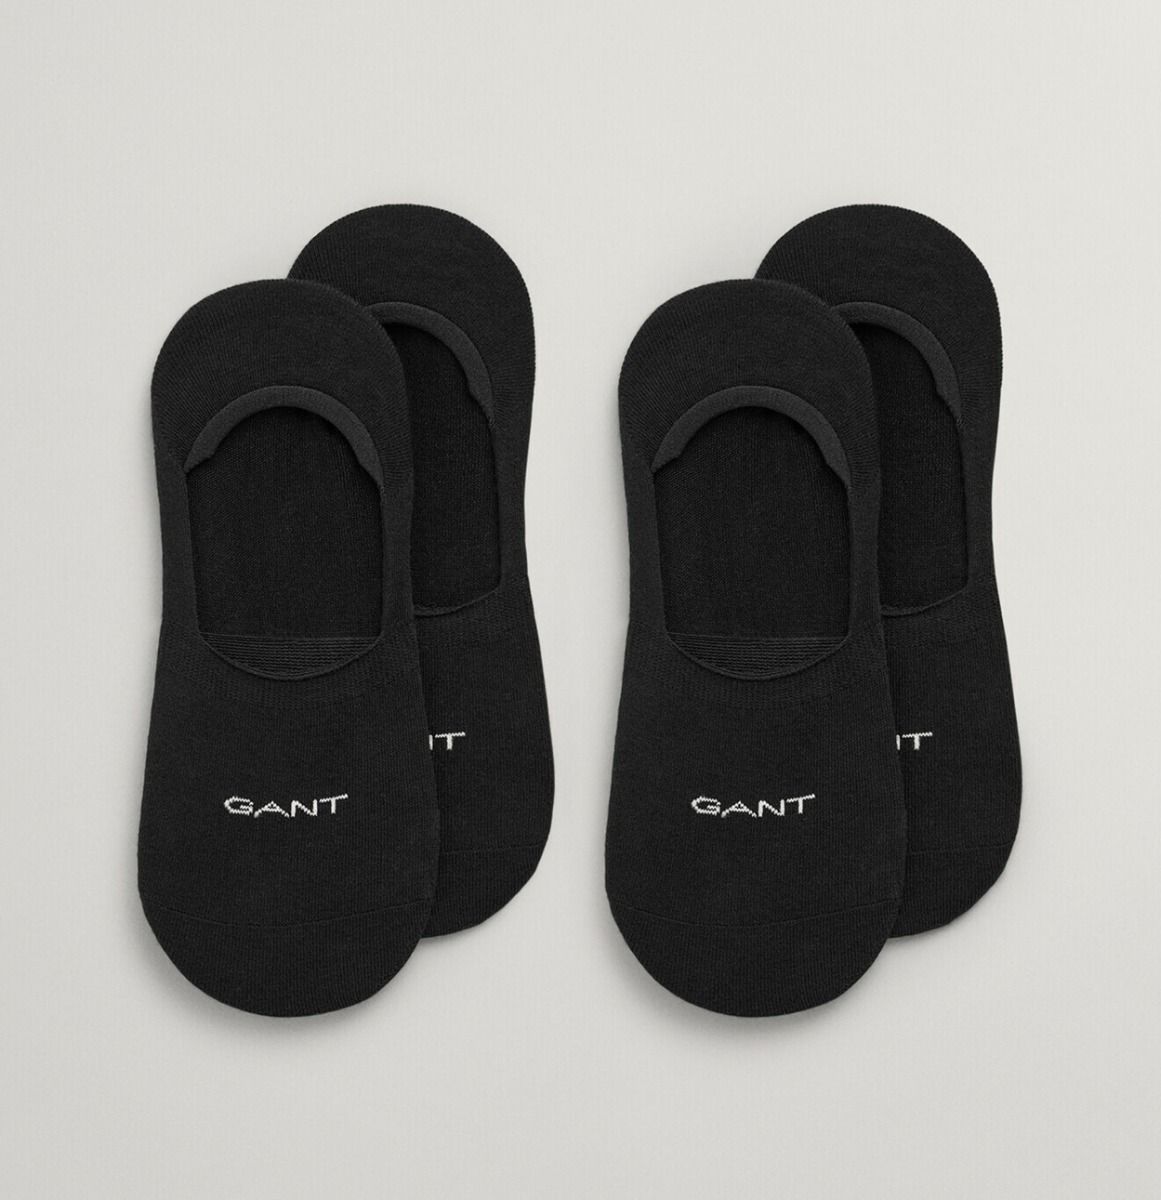 Gant Ανδρικές Κάλτσες 2 Ζεύγη 9960257-005 Μαύρο NEW ARRIVALS>ΑΝΔΡΑΣ>ΡΟΥΧΑ